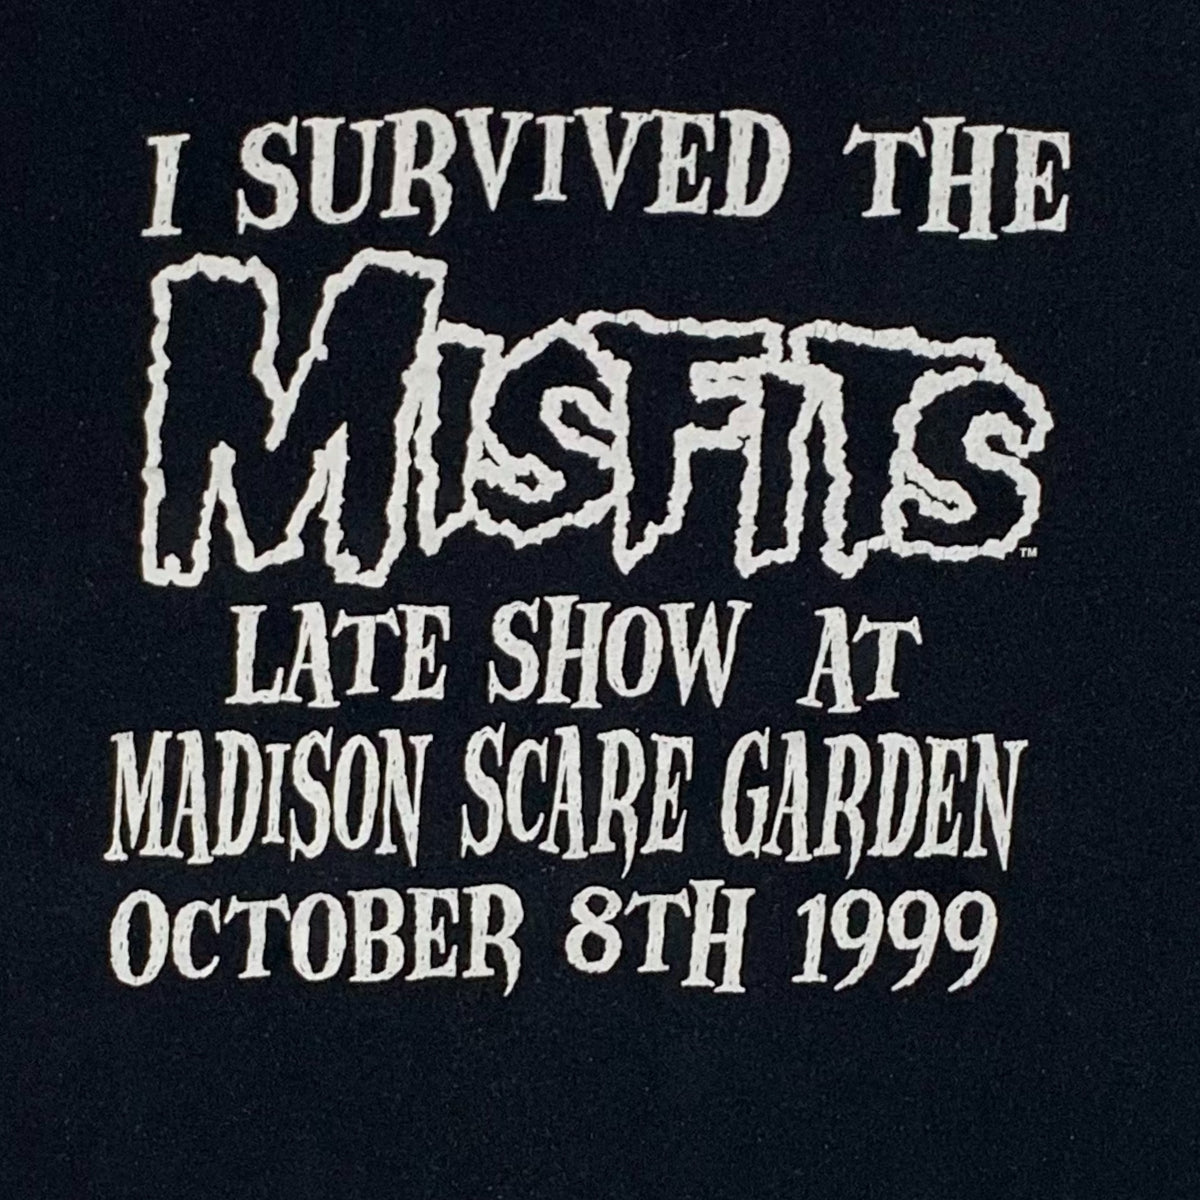 Vintage The Misfits &quot;Madison Square Garden&quot; T-Shirt